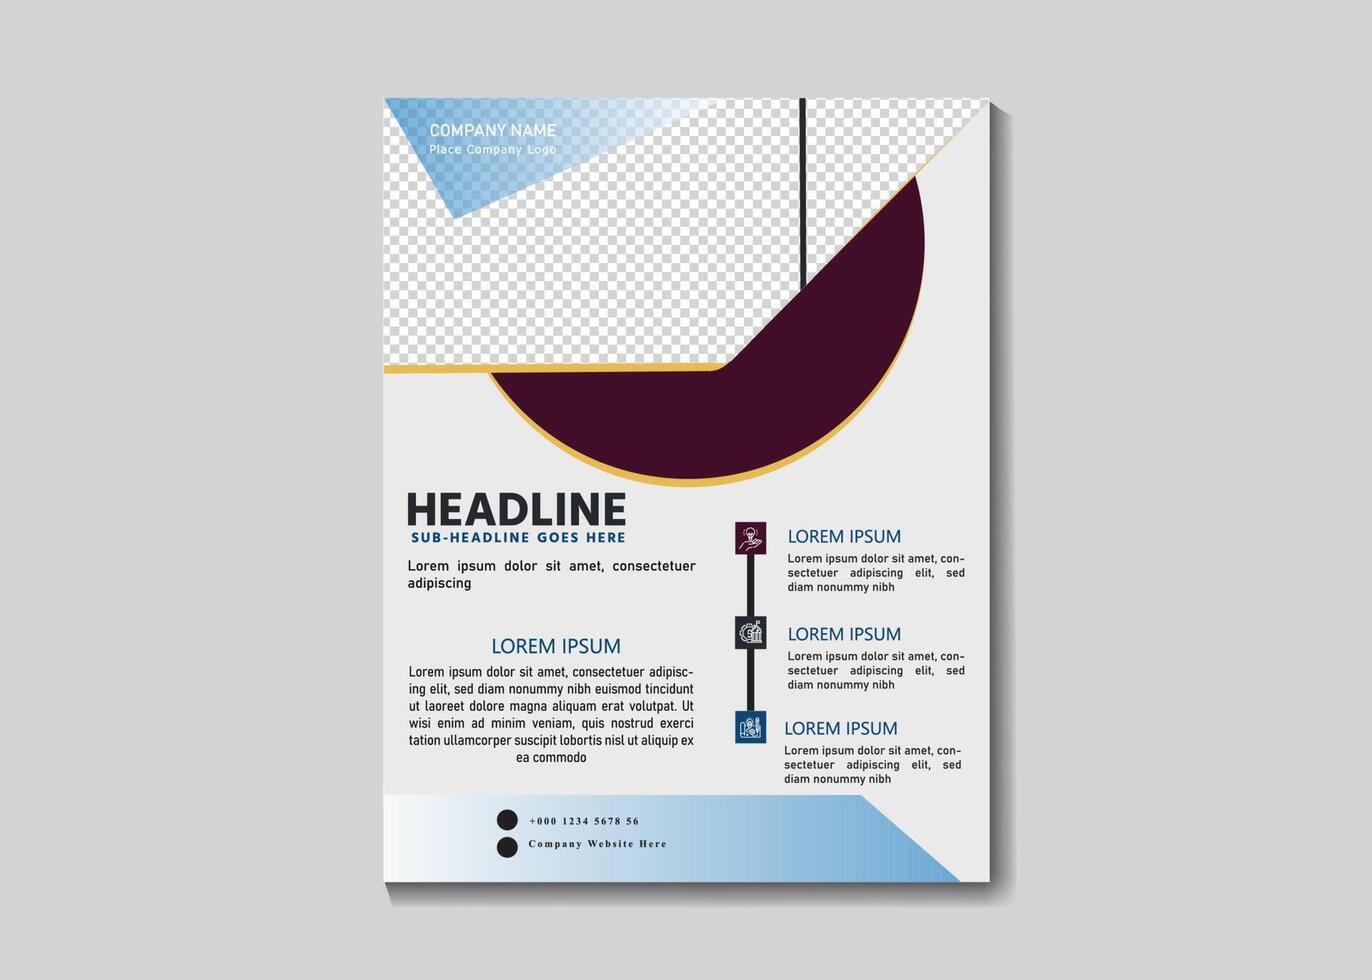 vektor företags- företag multipurpose flygblad design och broschyr omslag sida mall